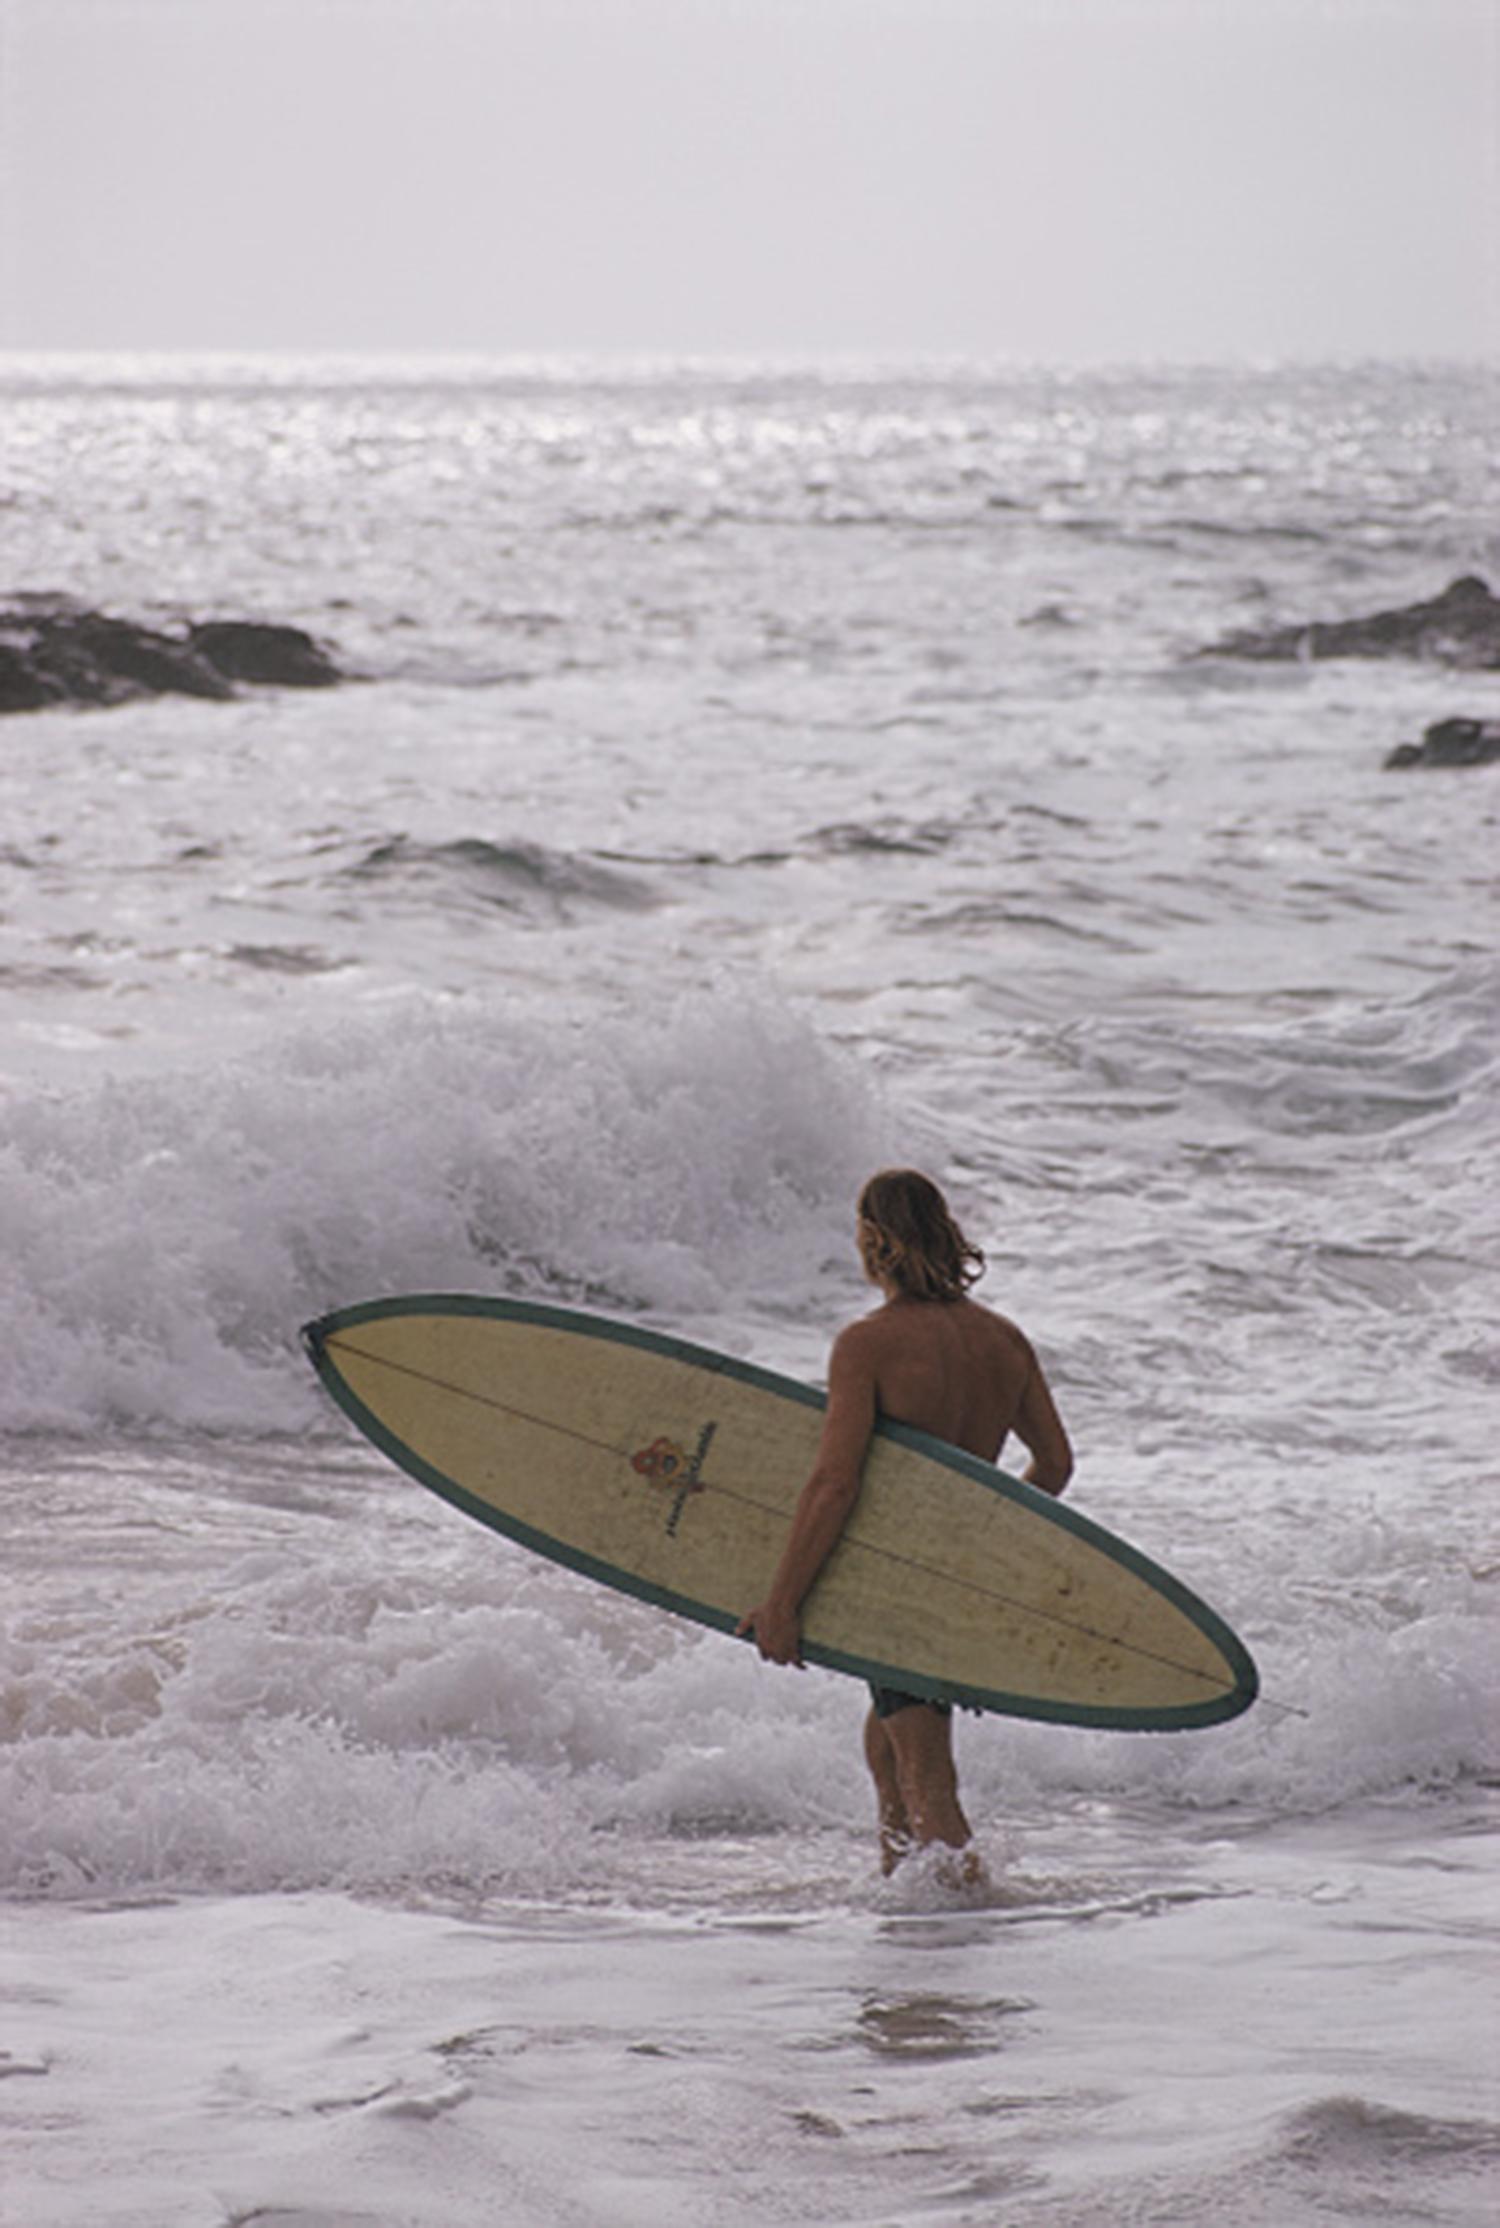 Un surfeur dans la mer à Laguna Beach, Californie, janvier 1970. (Photo par Slim Aarons/Hulton Archive/Getty Images)

Slim Aarons Estate Edition, certificat d'authenticité inclus.
Numéroté et tamponné par la succession Slim Aarons

Édition moderne